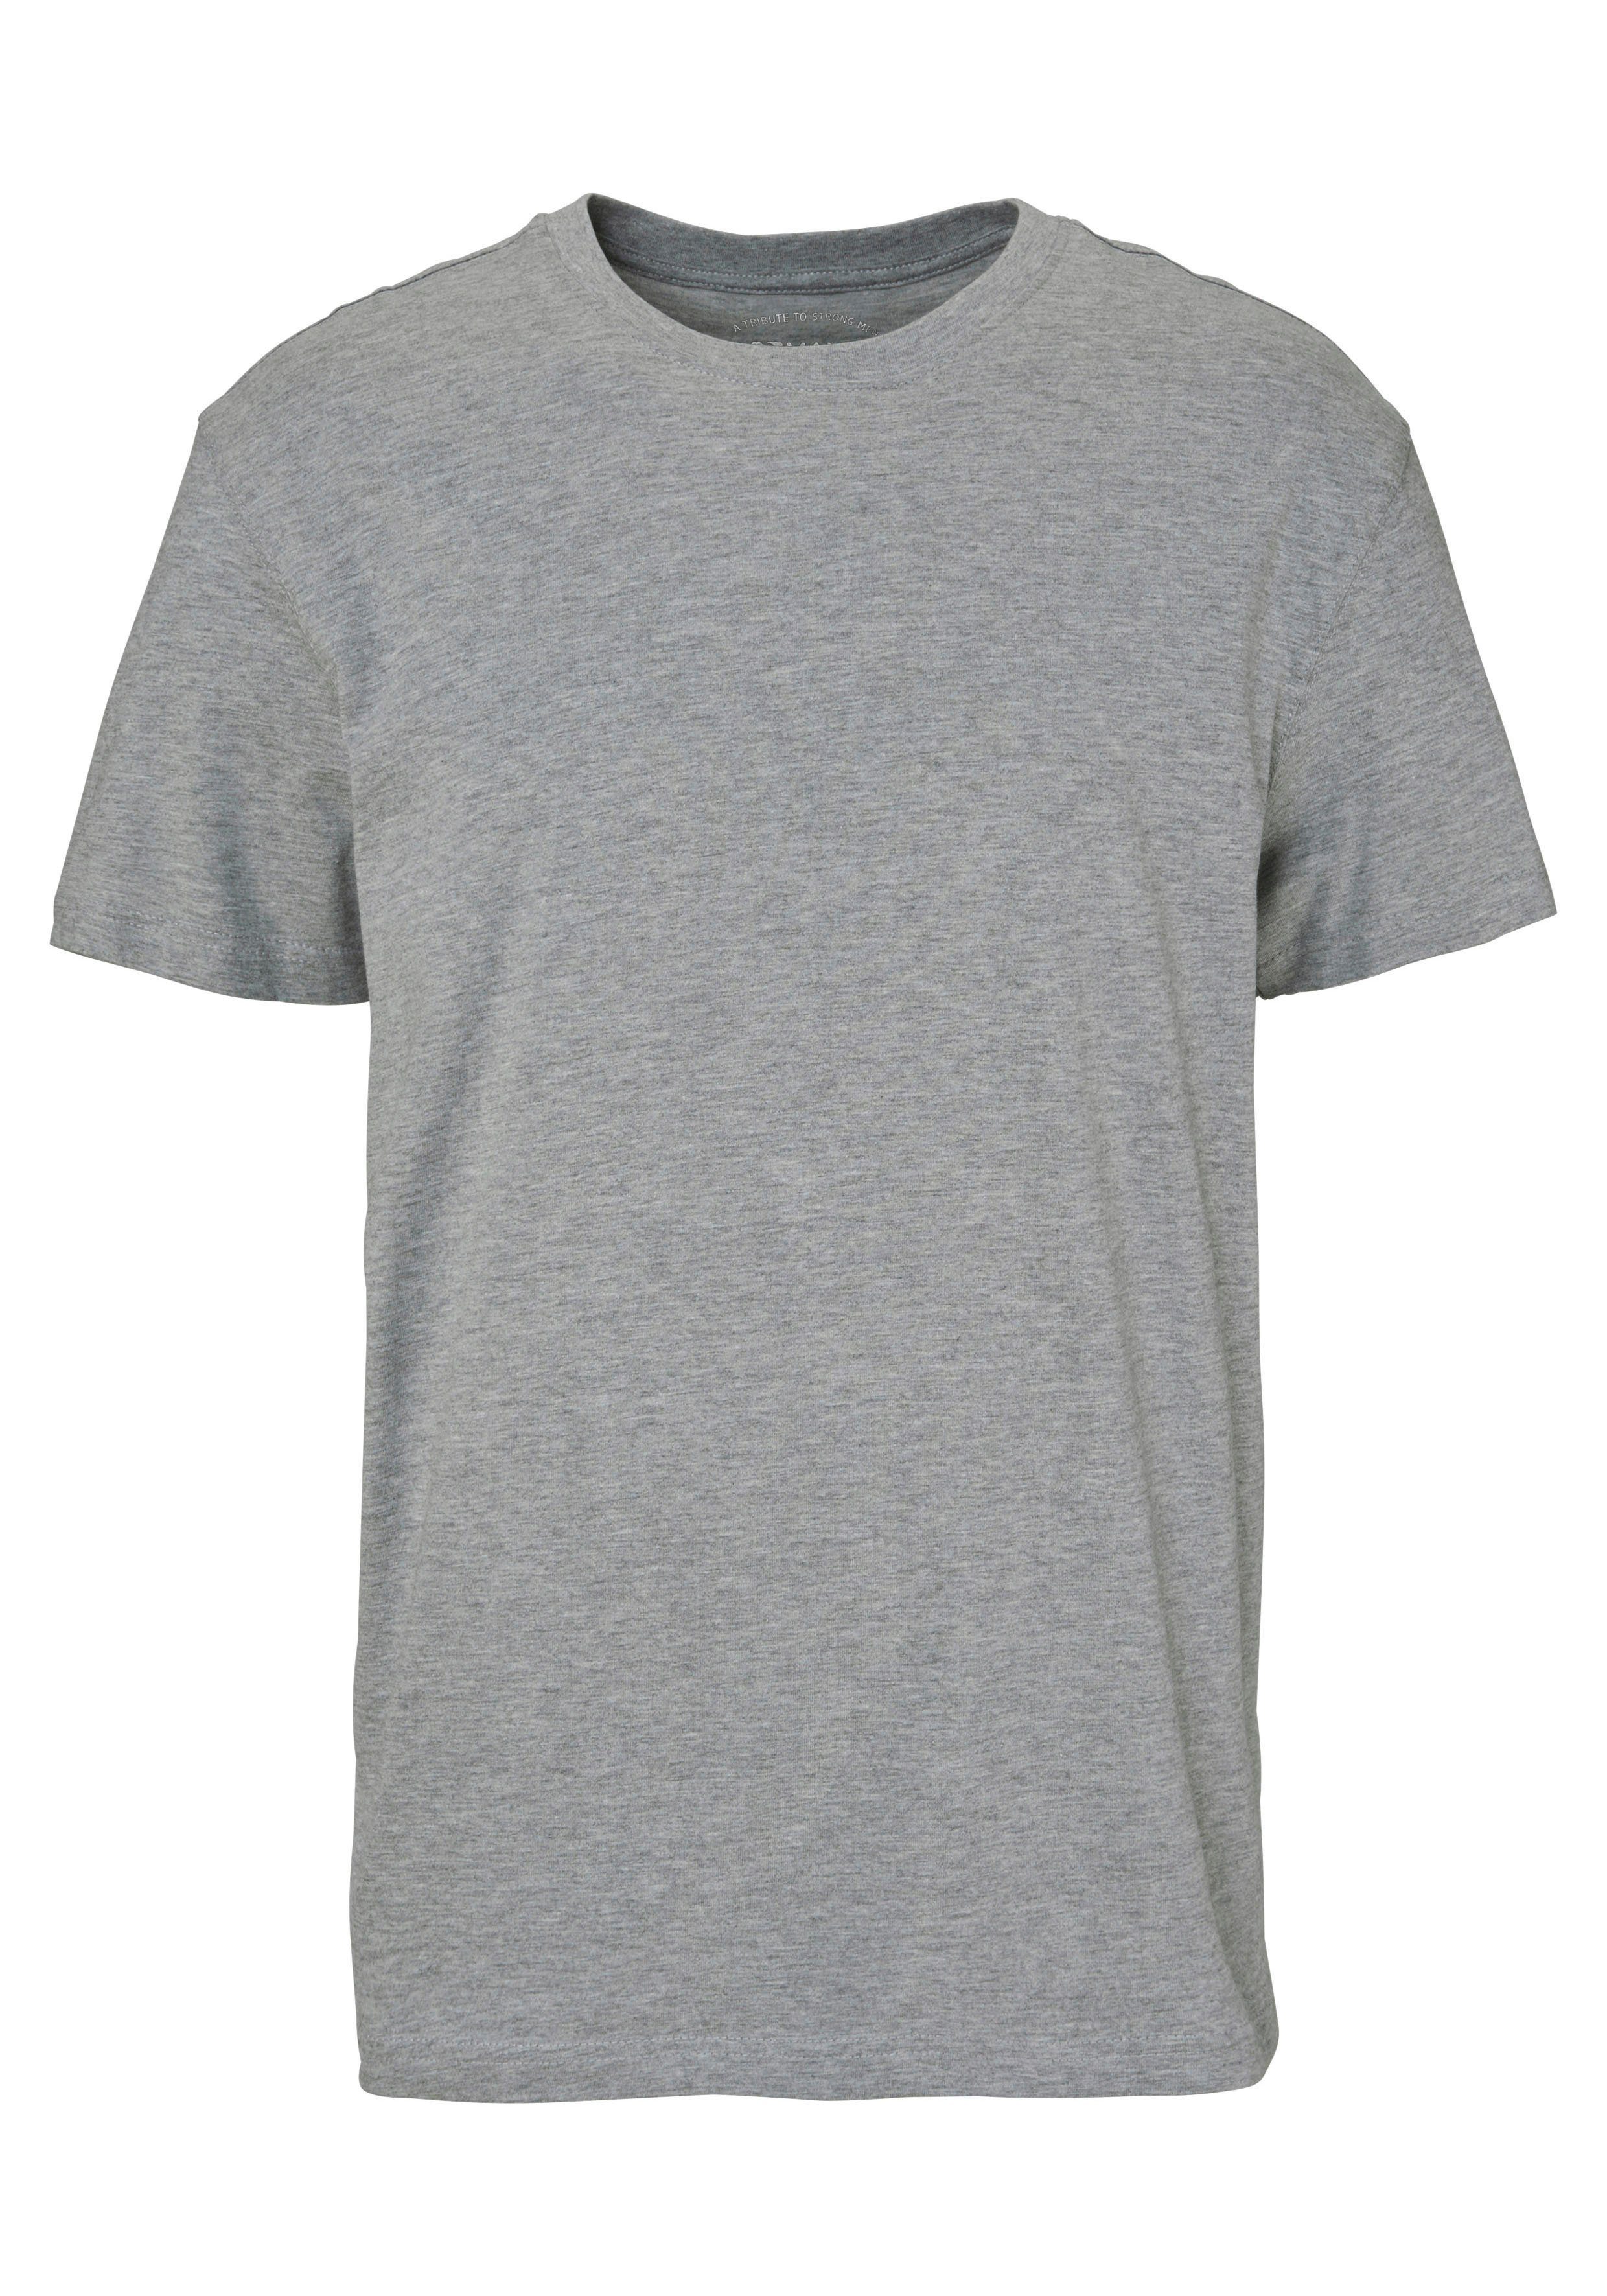 Unterzieh- rot, perfekt Man's 3er-Pack) 3-tlg., als T-Shirt grau-meliert World (Packung, marine, T-shirt